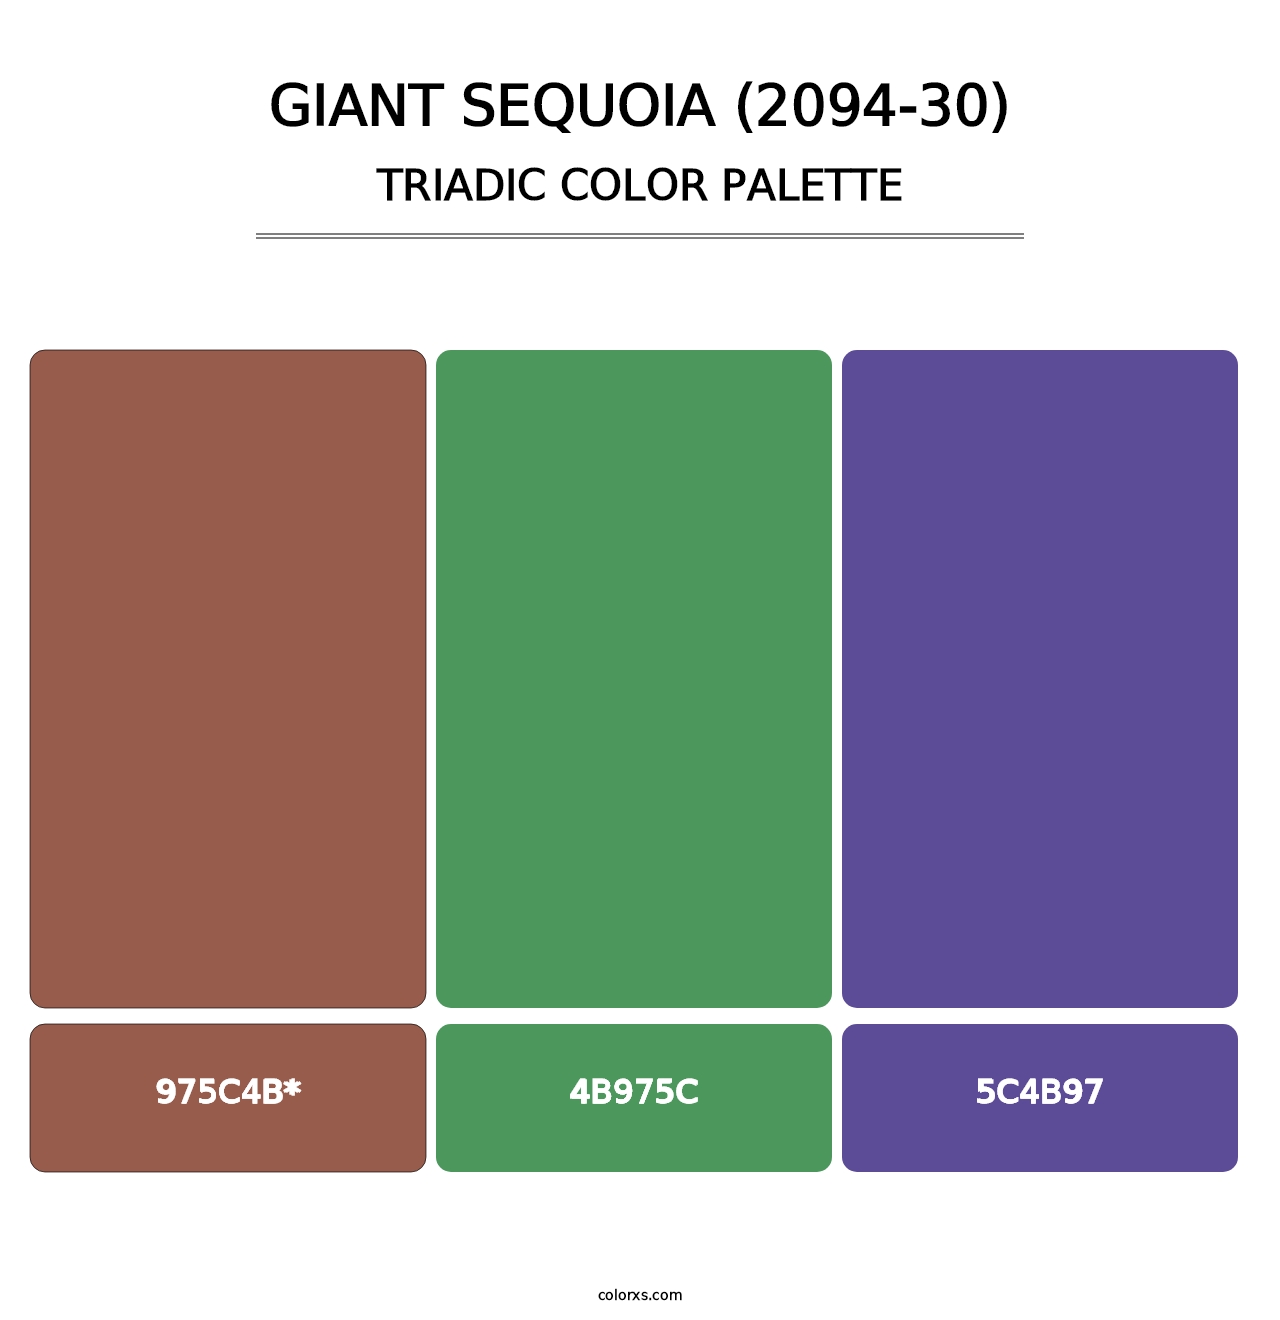 Giant Sequoia (2094-30) - Triadic Color Palette